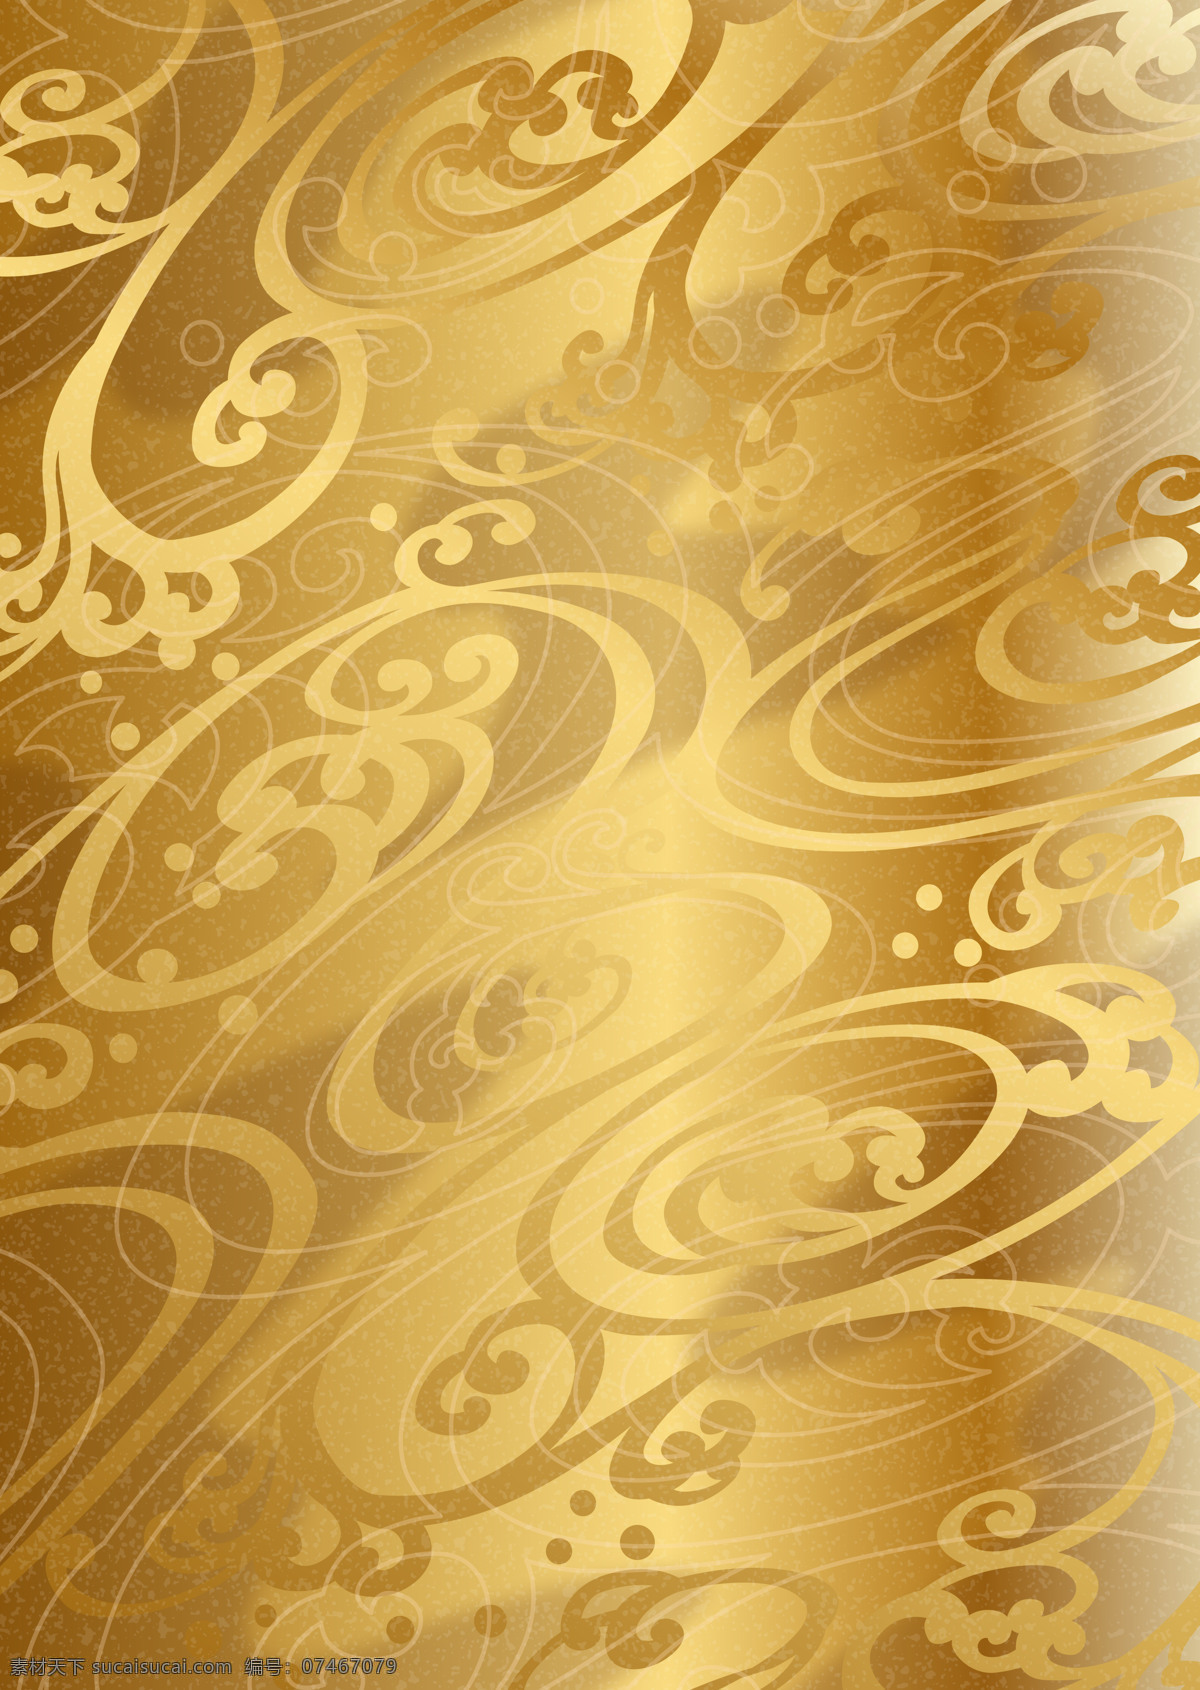 金色 海浪 纹 效果 背景 图 版面设计背景 版式 海浪纹 模板设计 设计素材 背景图片